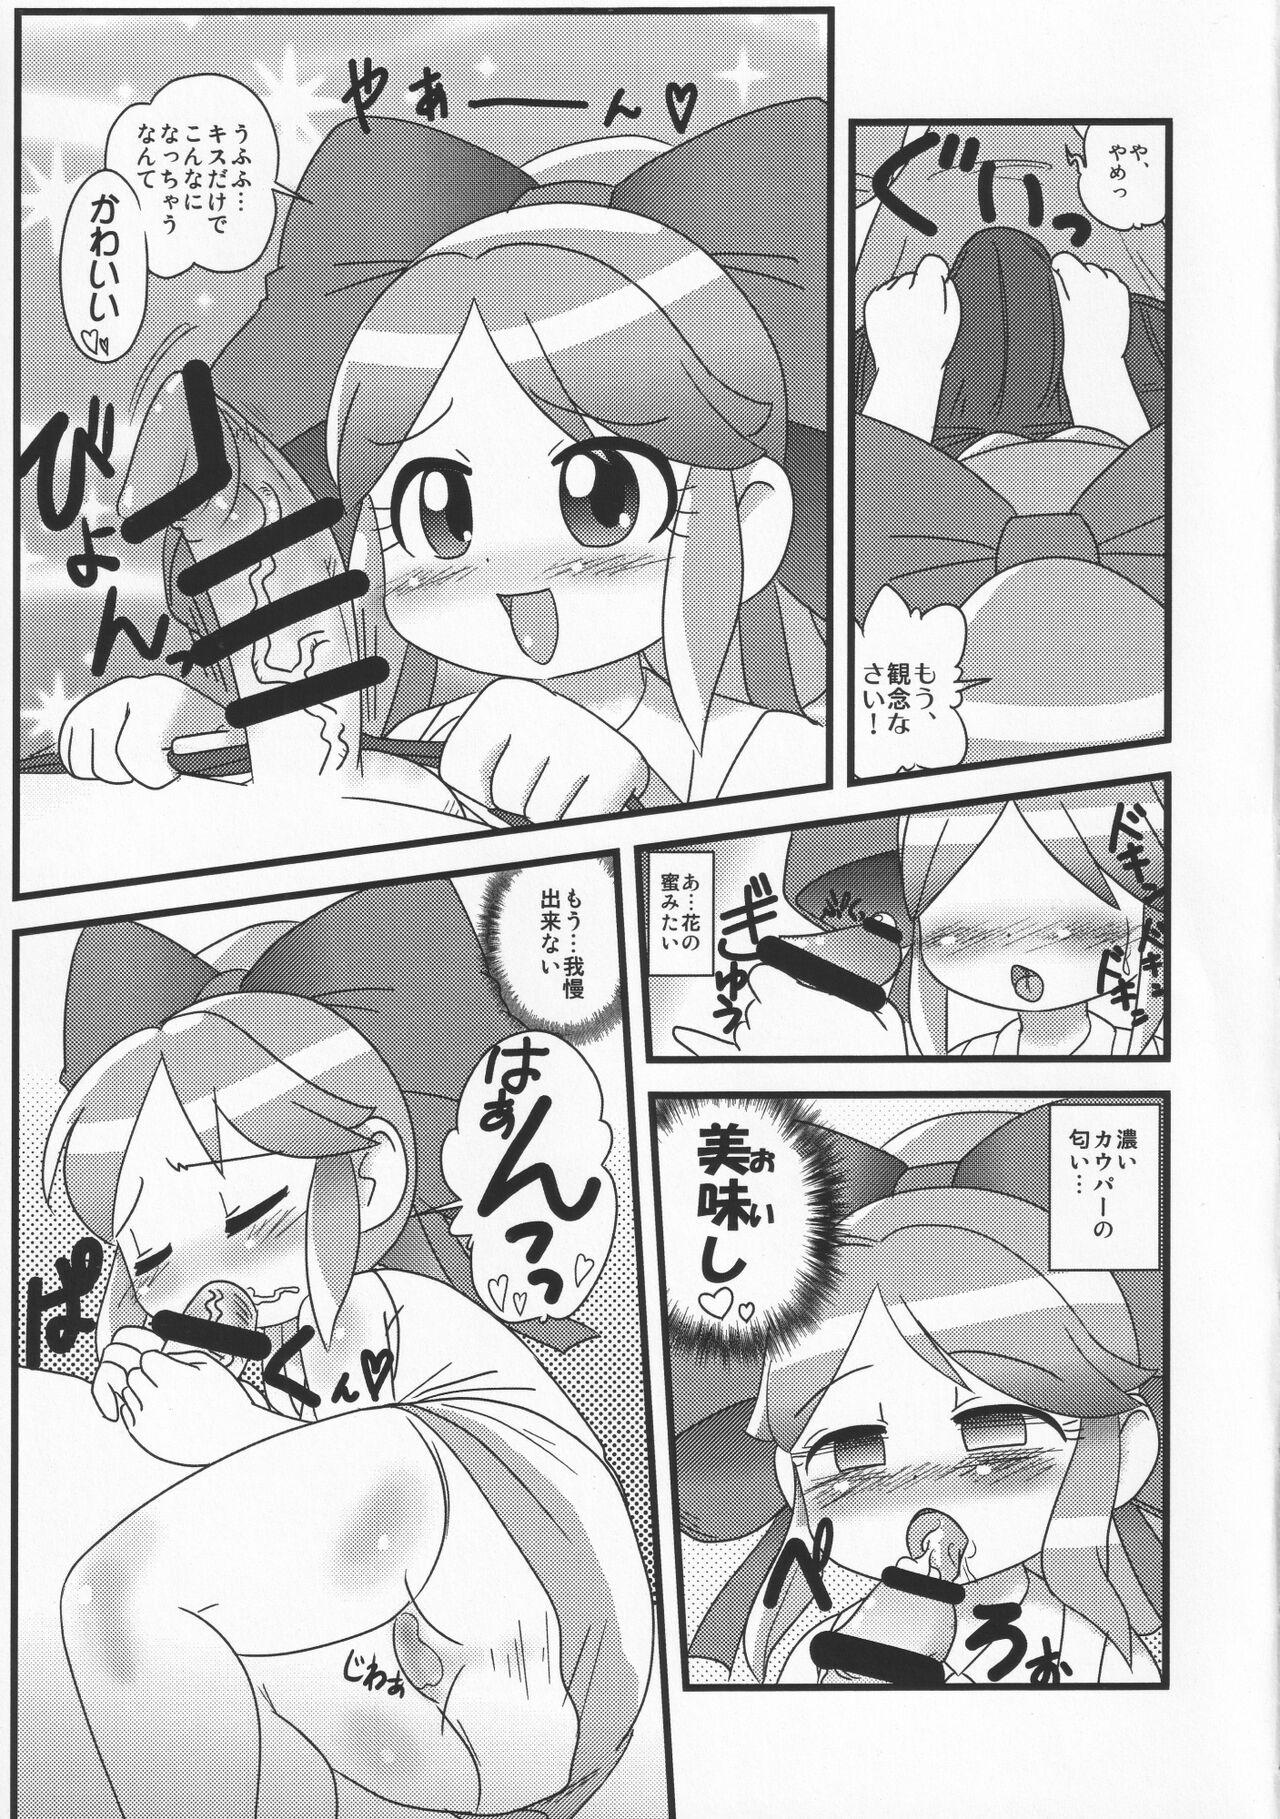 Gaycum Taose!! Kimari-chan - Battle spirits Shemales - Page 4